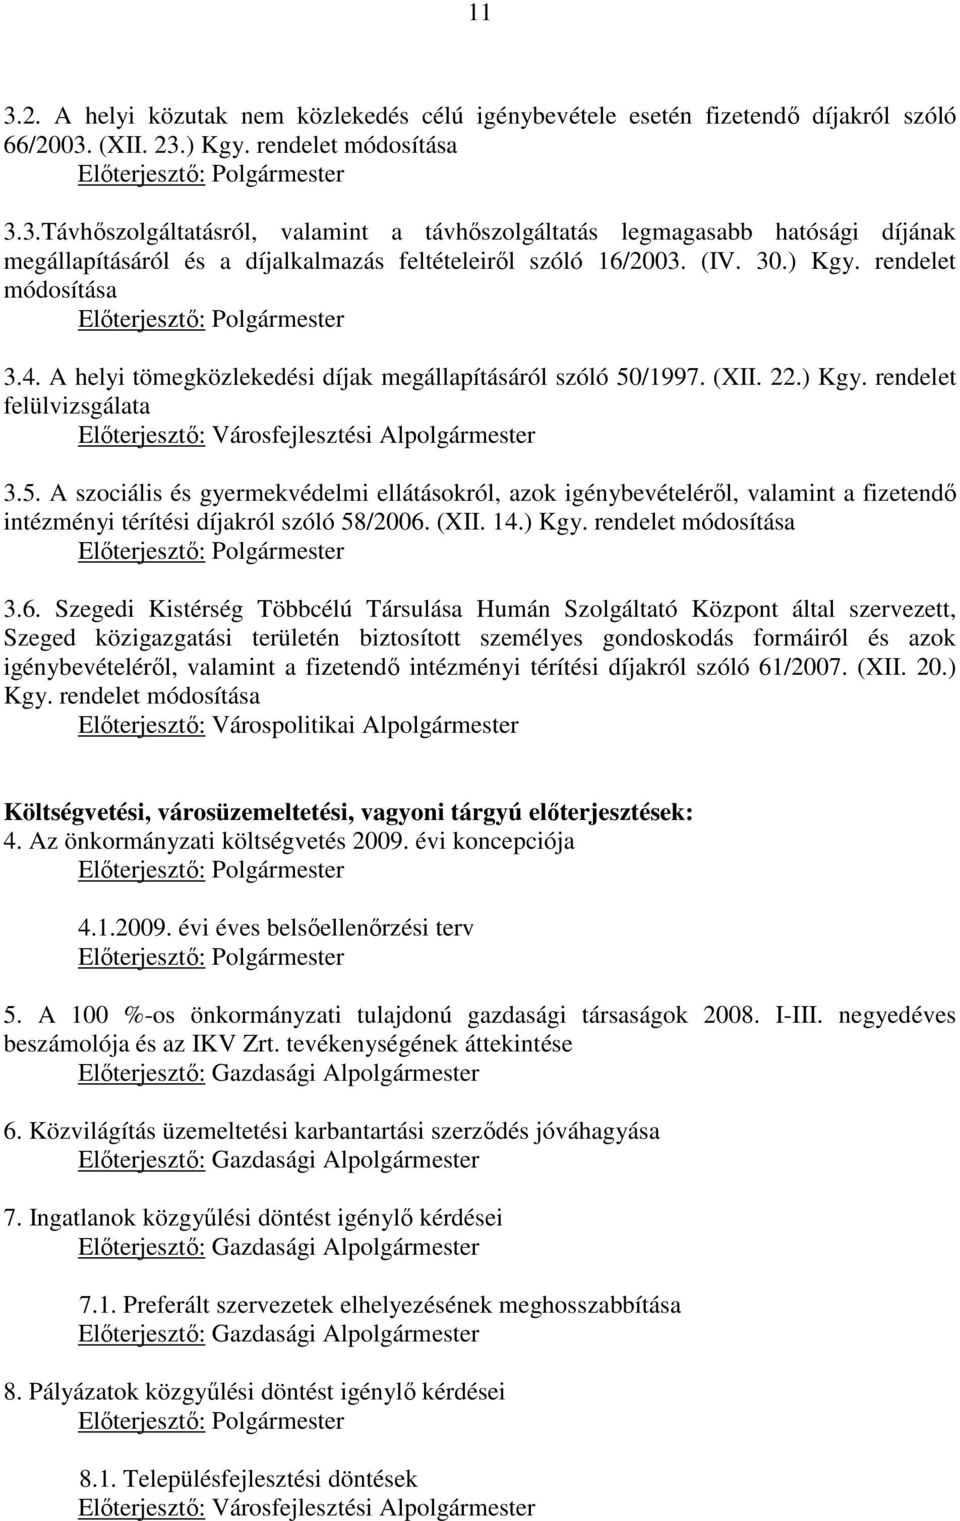 5. A szociális és gyermekvédelmi ellátásokról, azok igénybevételérıl, valamint a fizetendı intézményi térítési díjakról szóló 58/2006. (XII. 14.) Kgy. rendelet módosítása Elıterjesztı: Polgármester 3.